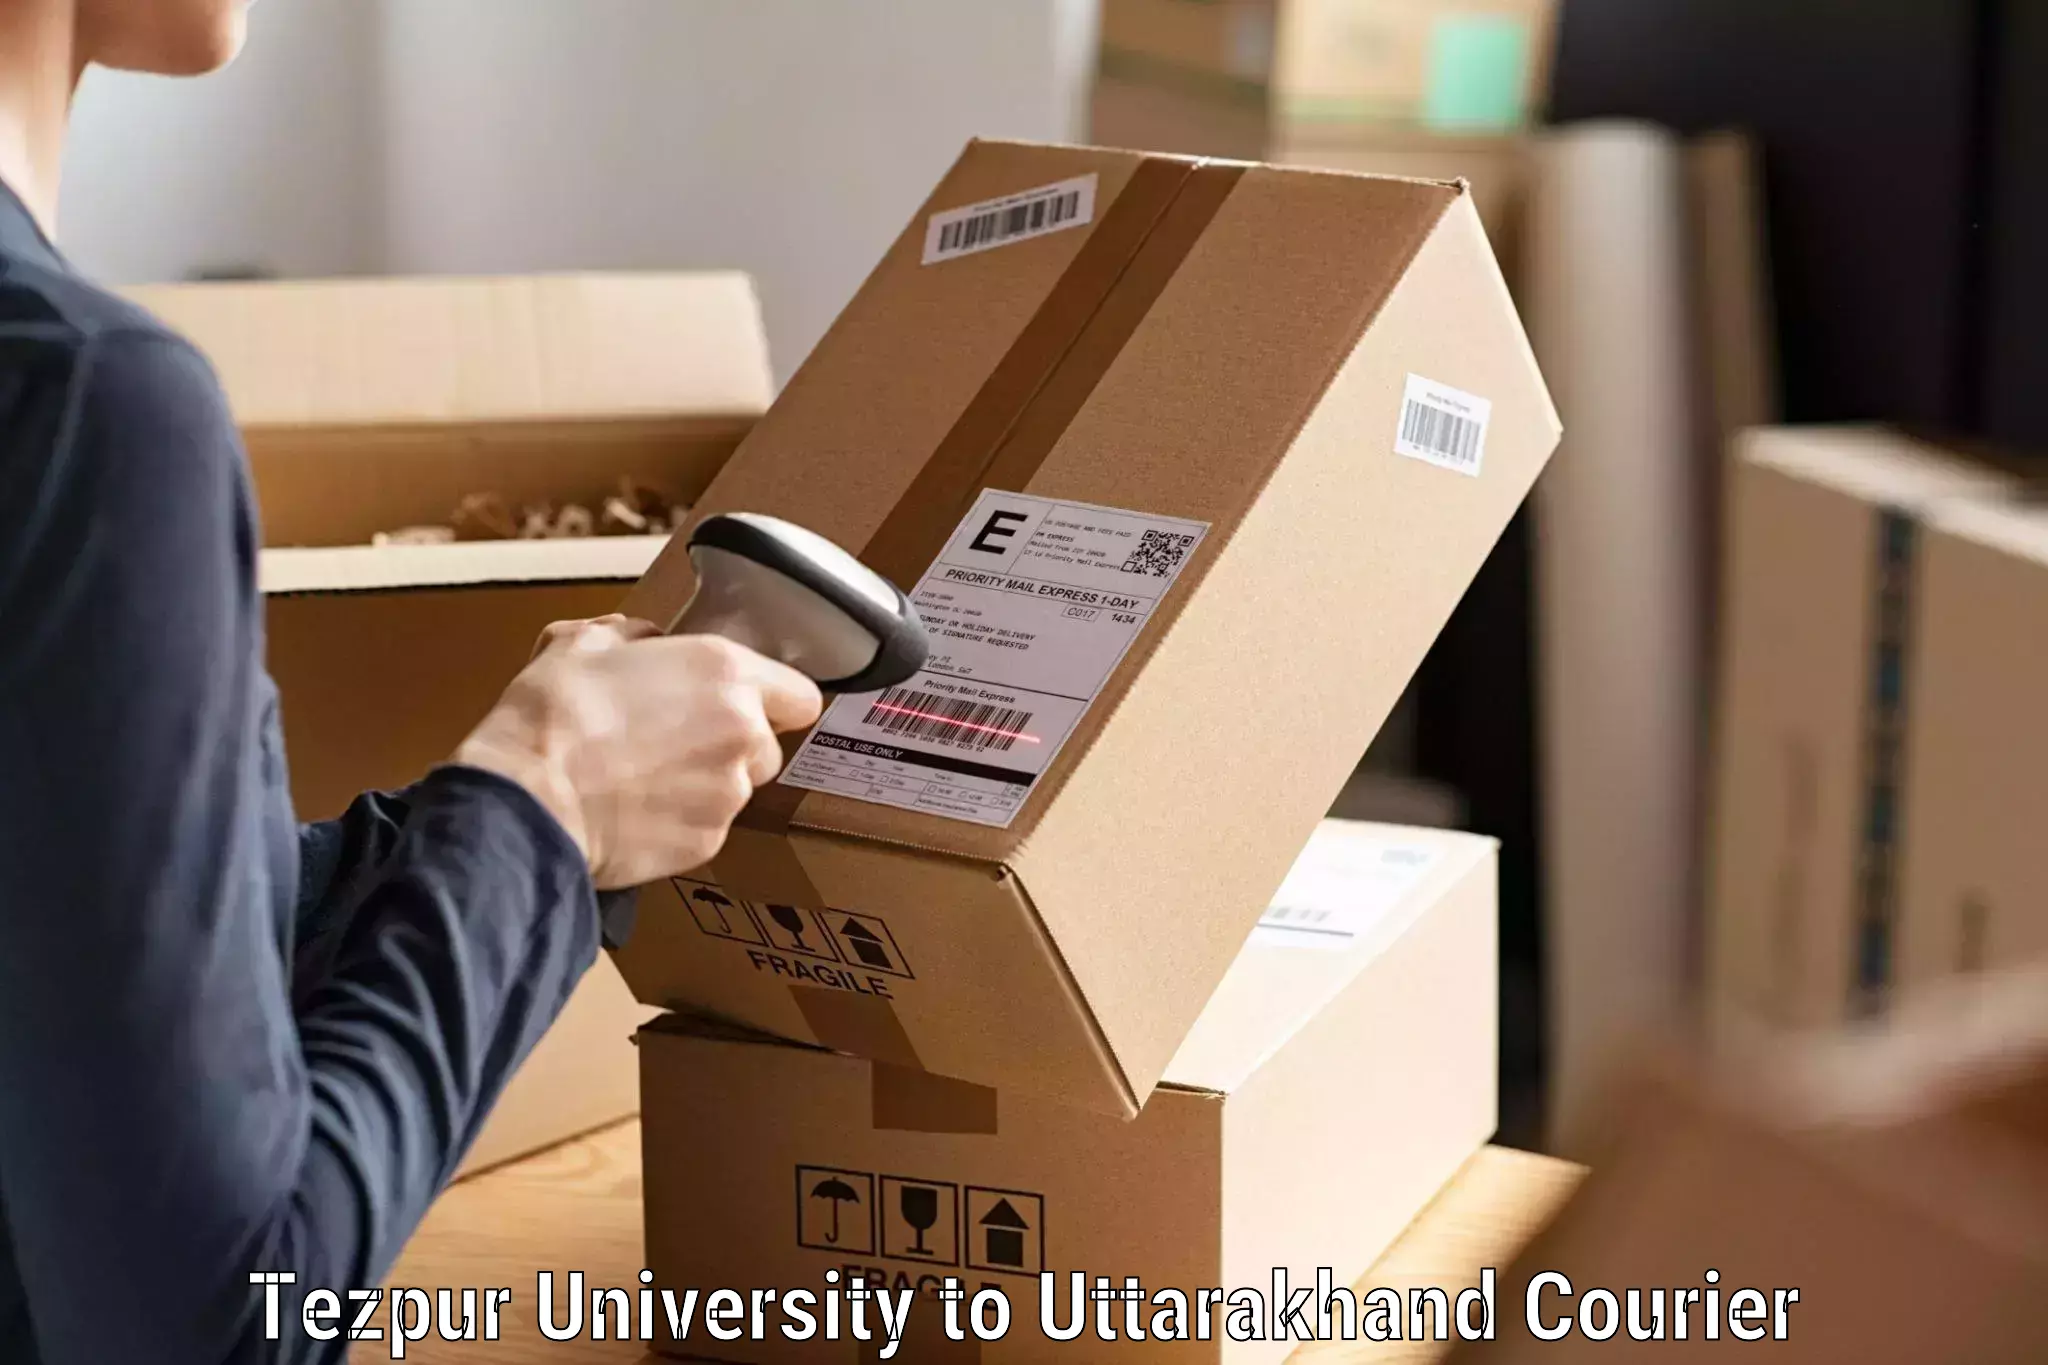 Parcel delivery in Tezpur University to Karnaprayag